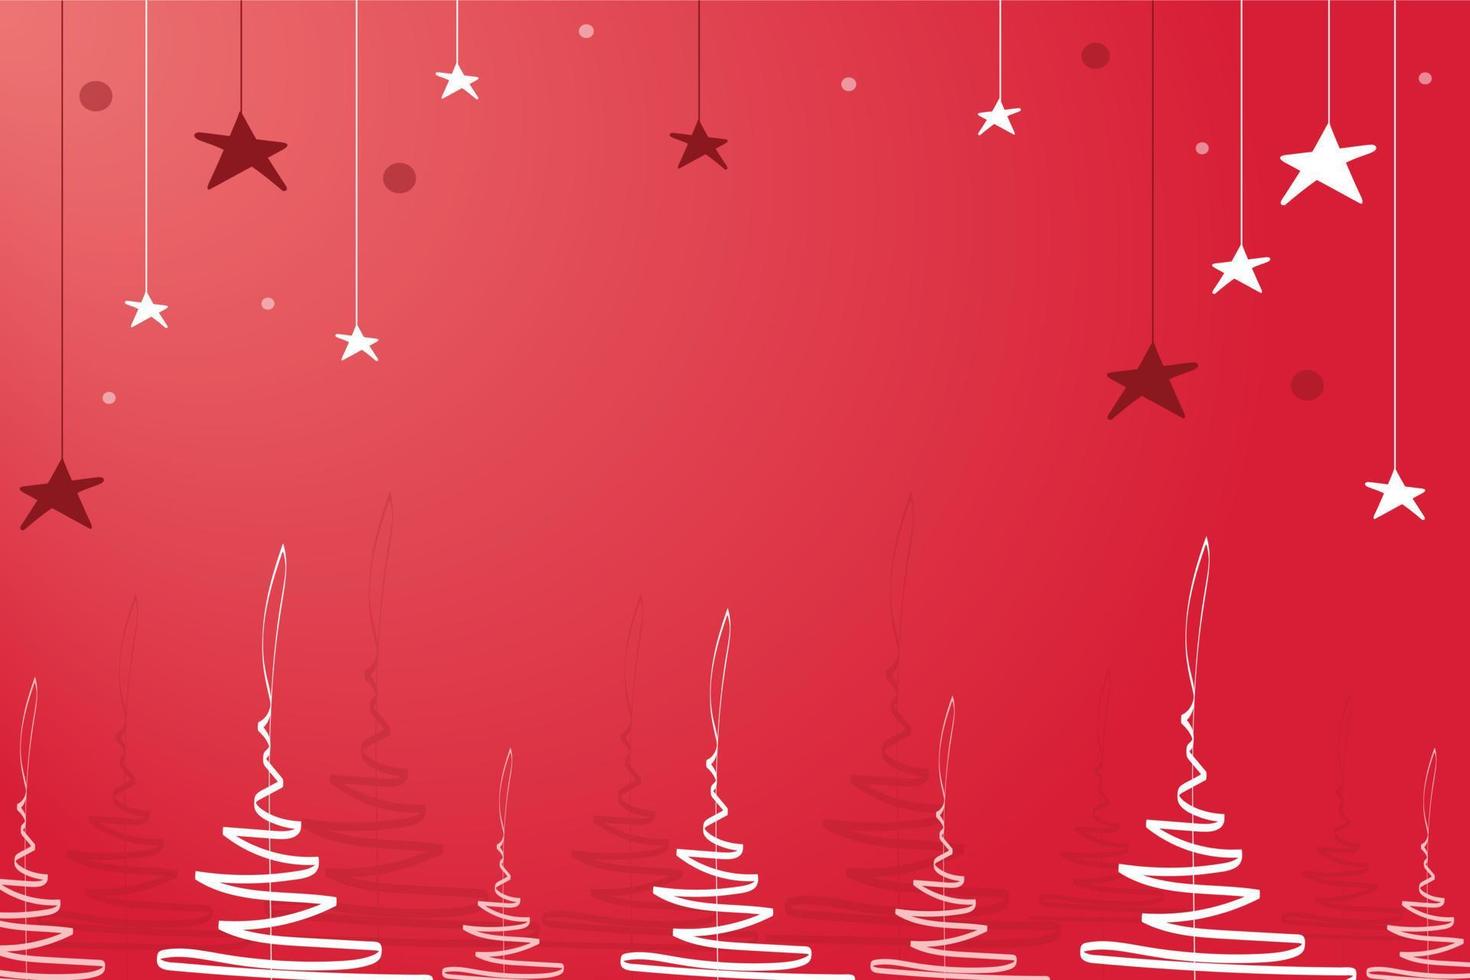 scharlachroter weihnachtshintergrund mit stilisierten weihnachtsbäumen und sternen. durchscheinende Kreise im Hintergrund. vorlage für karten, einladungen, typografie. Vektor